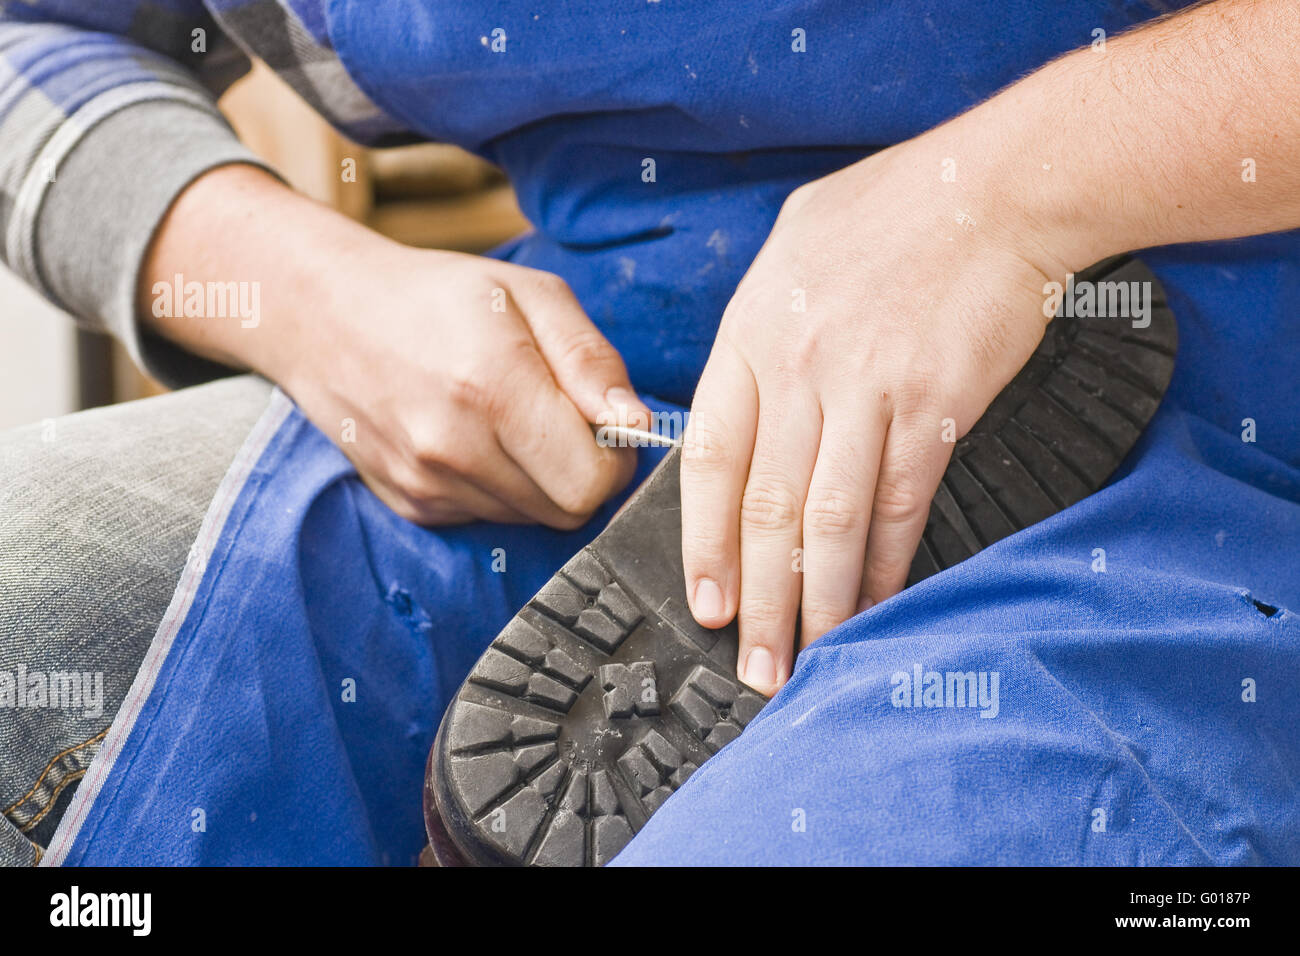 working shoemaker Stock Photo